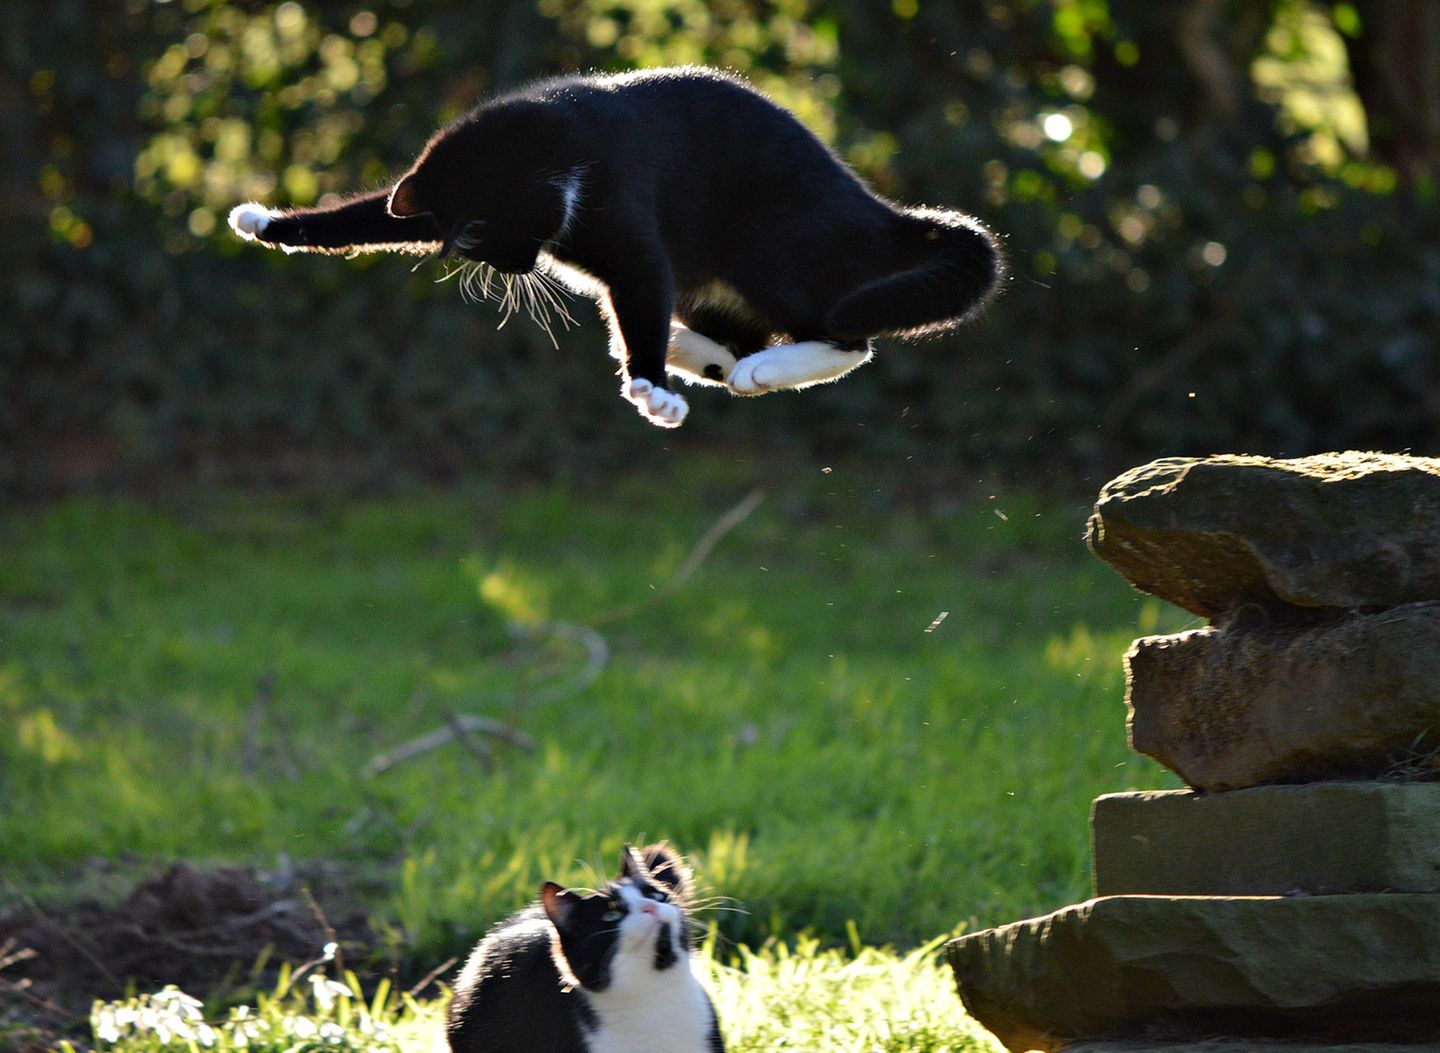 Haustier Fotowettbewerb: Katze springt